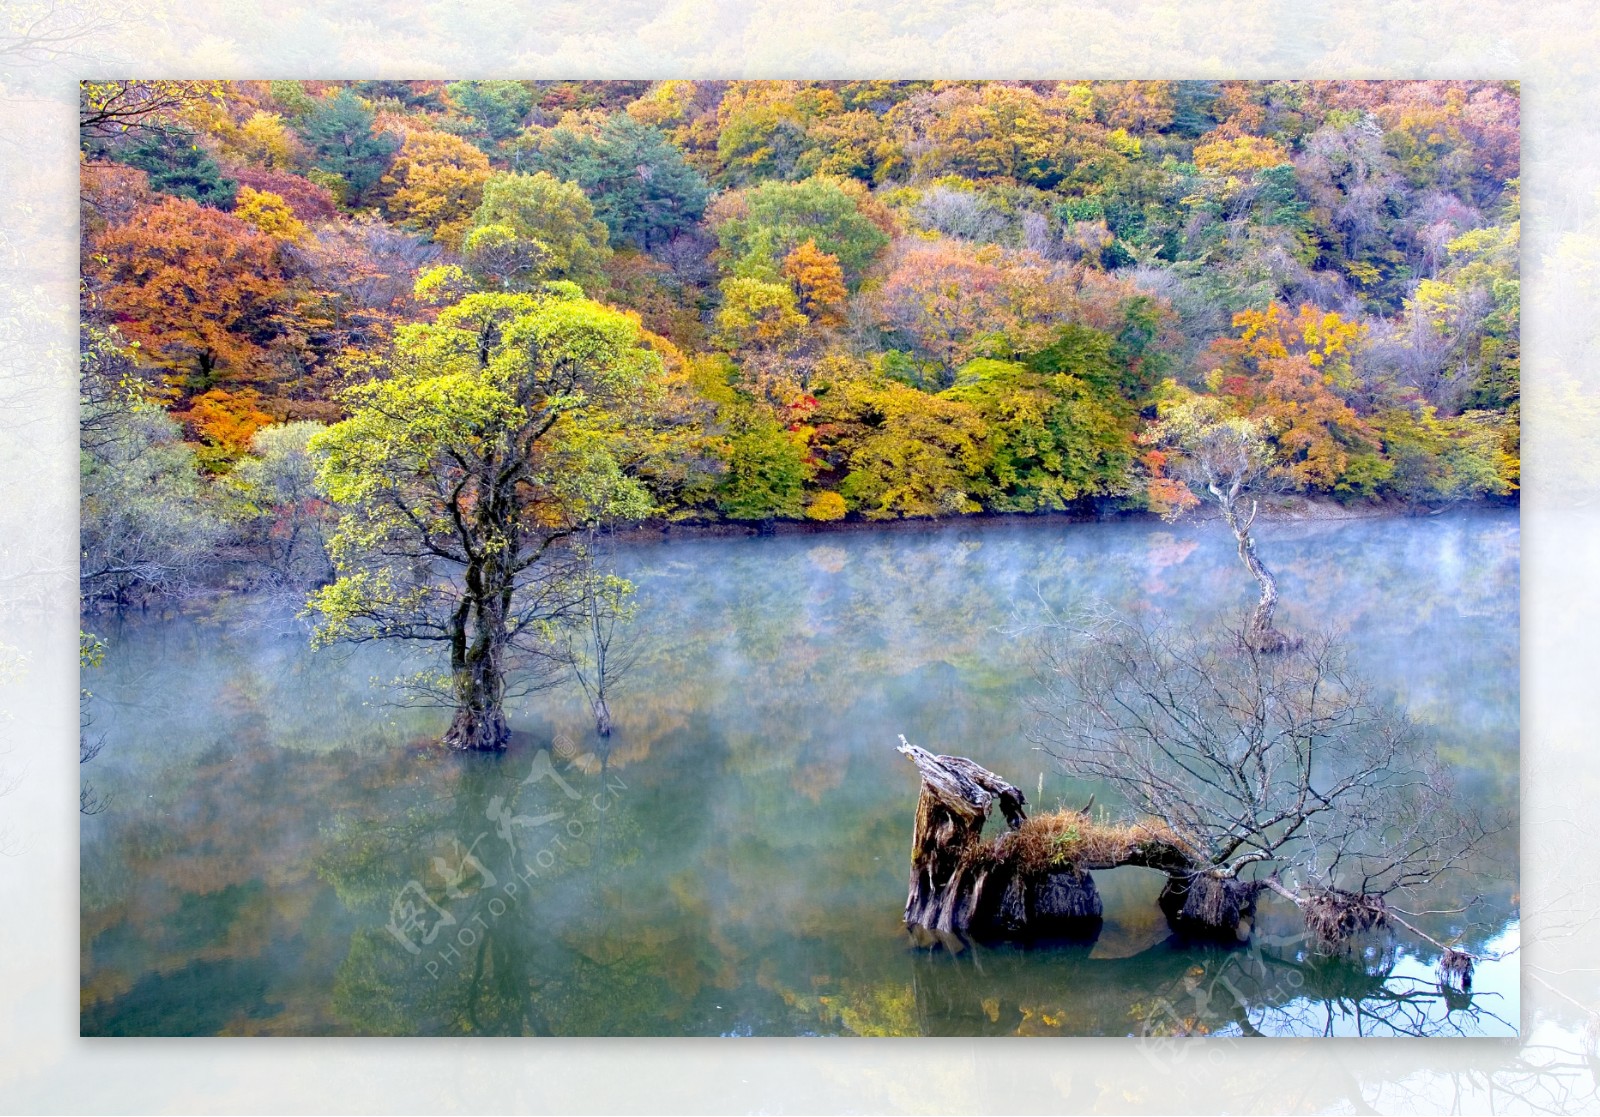 枫树林湖景图片